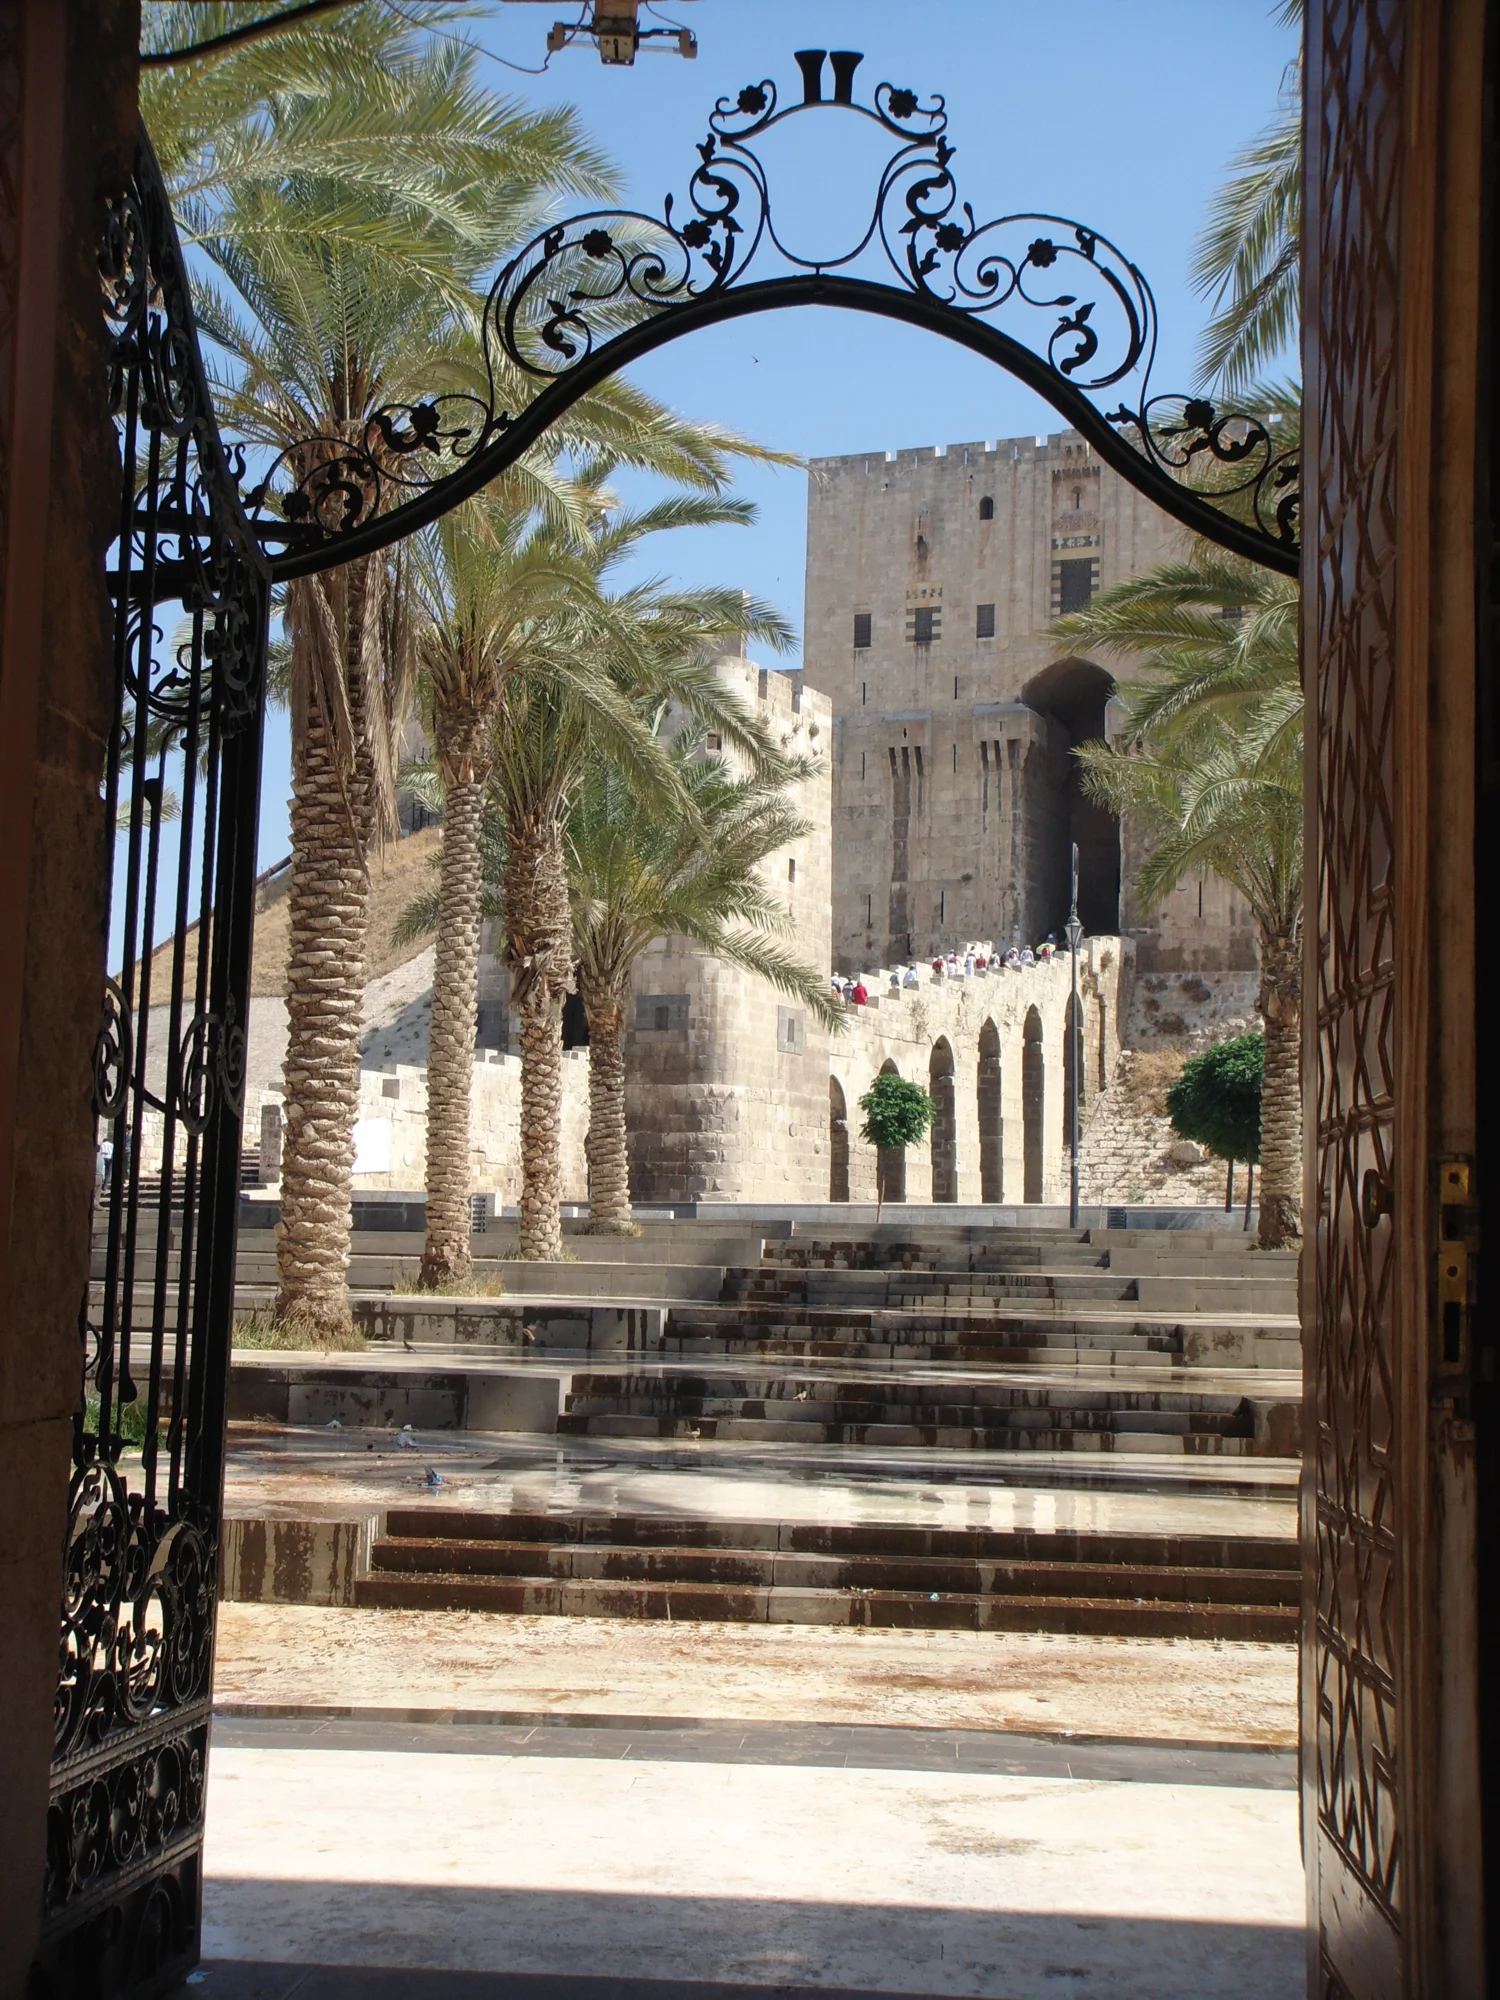 Zitadelle von Aleppo - Torturm und Eingangstorbau, Gesamtansicht mit Zugangsbrücke